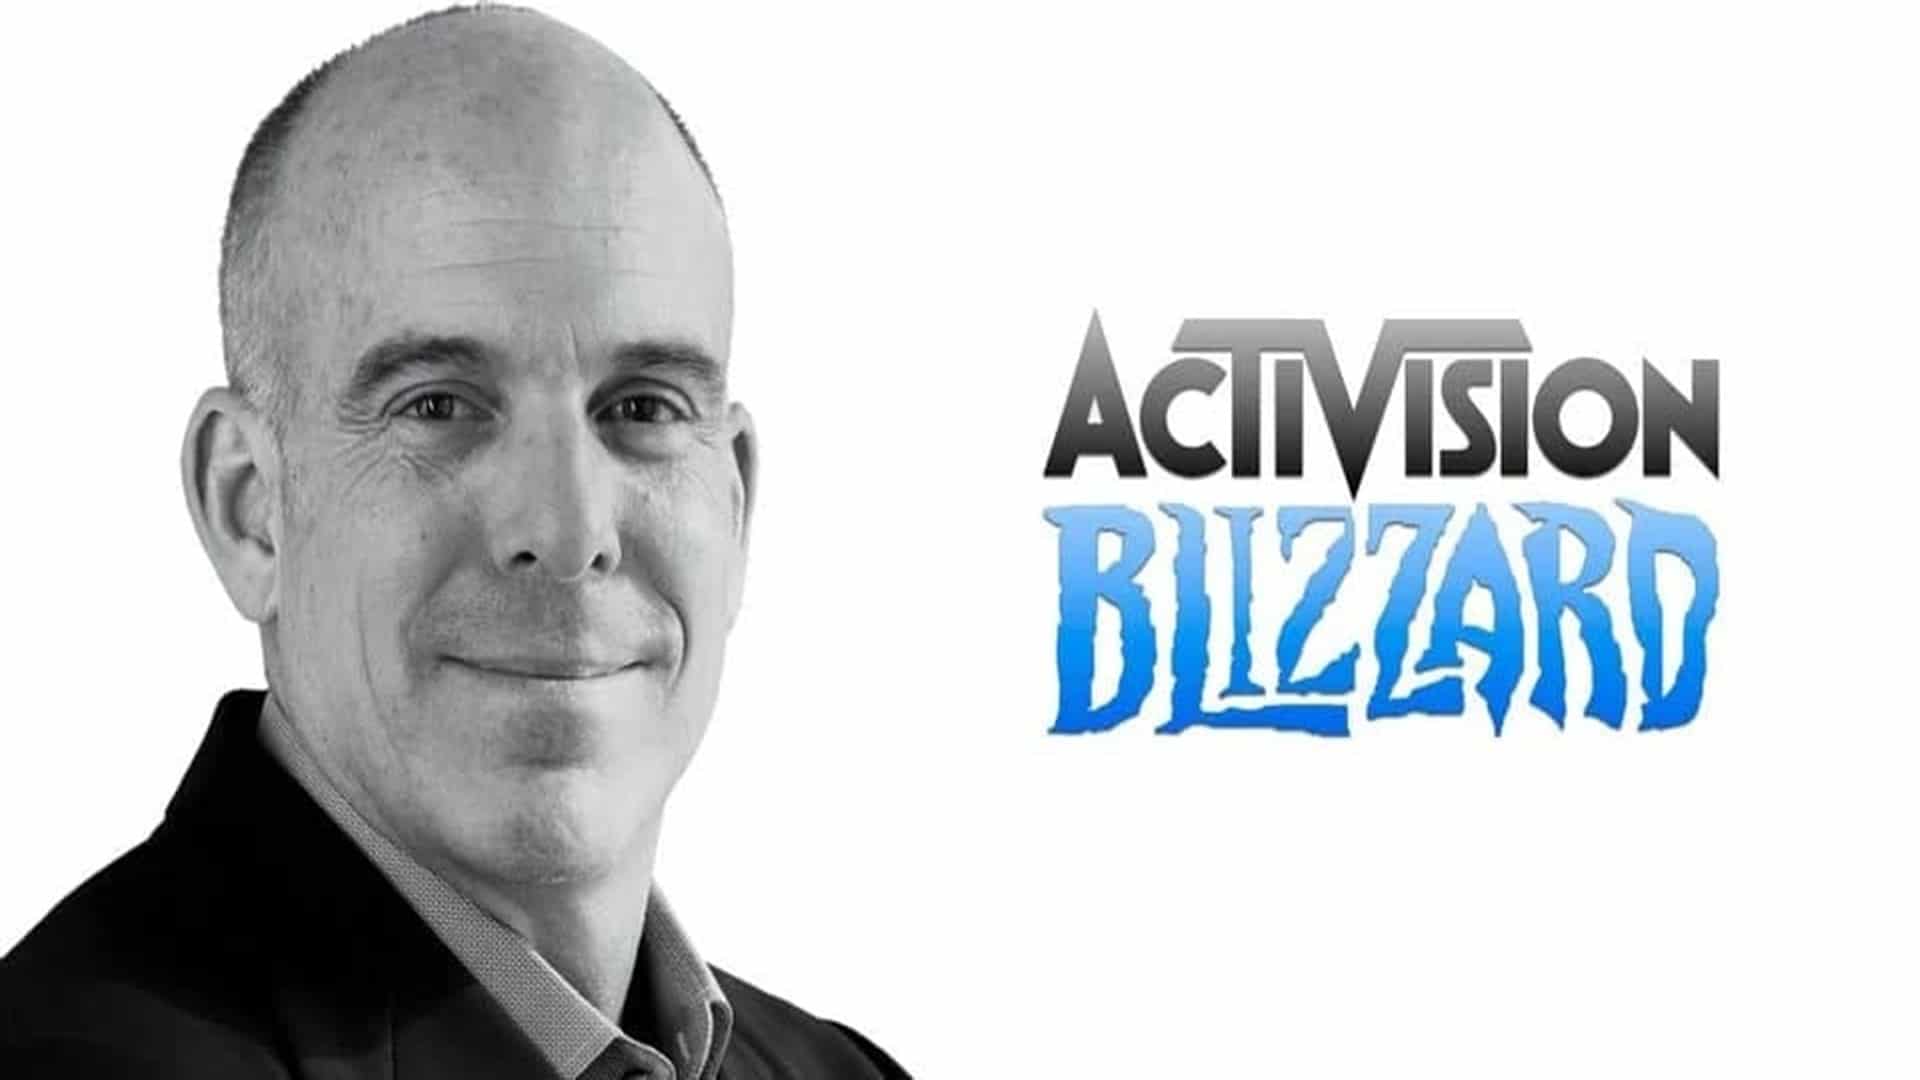 Doug Bowser Presidente de Nintendo of America critica a Activision Blizzard tras los informes angustiosos y perturbadores, GamersRD